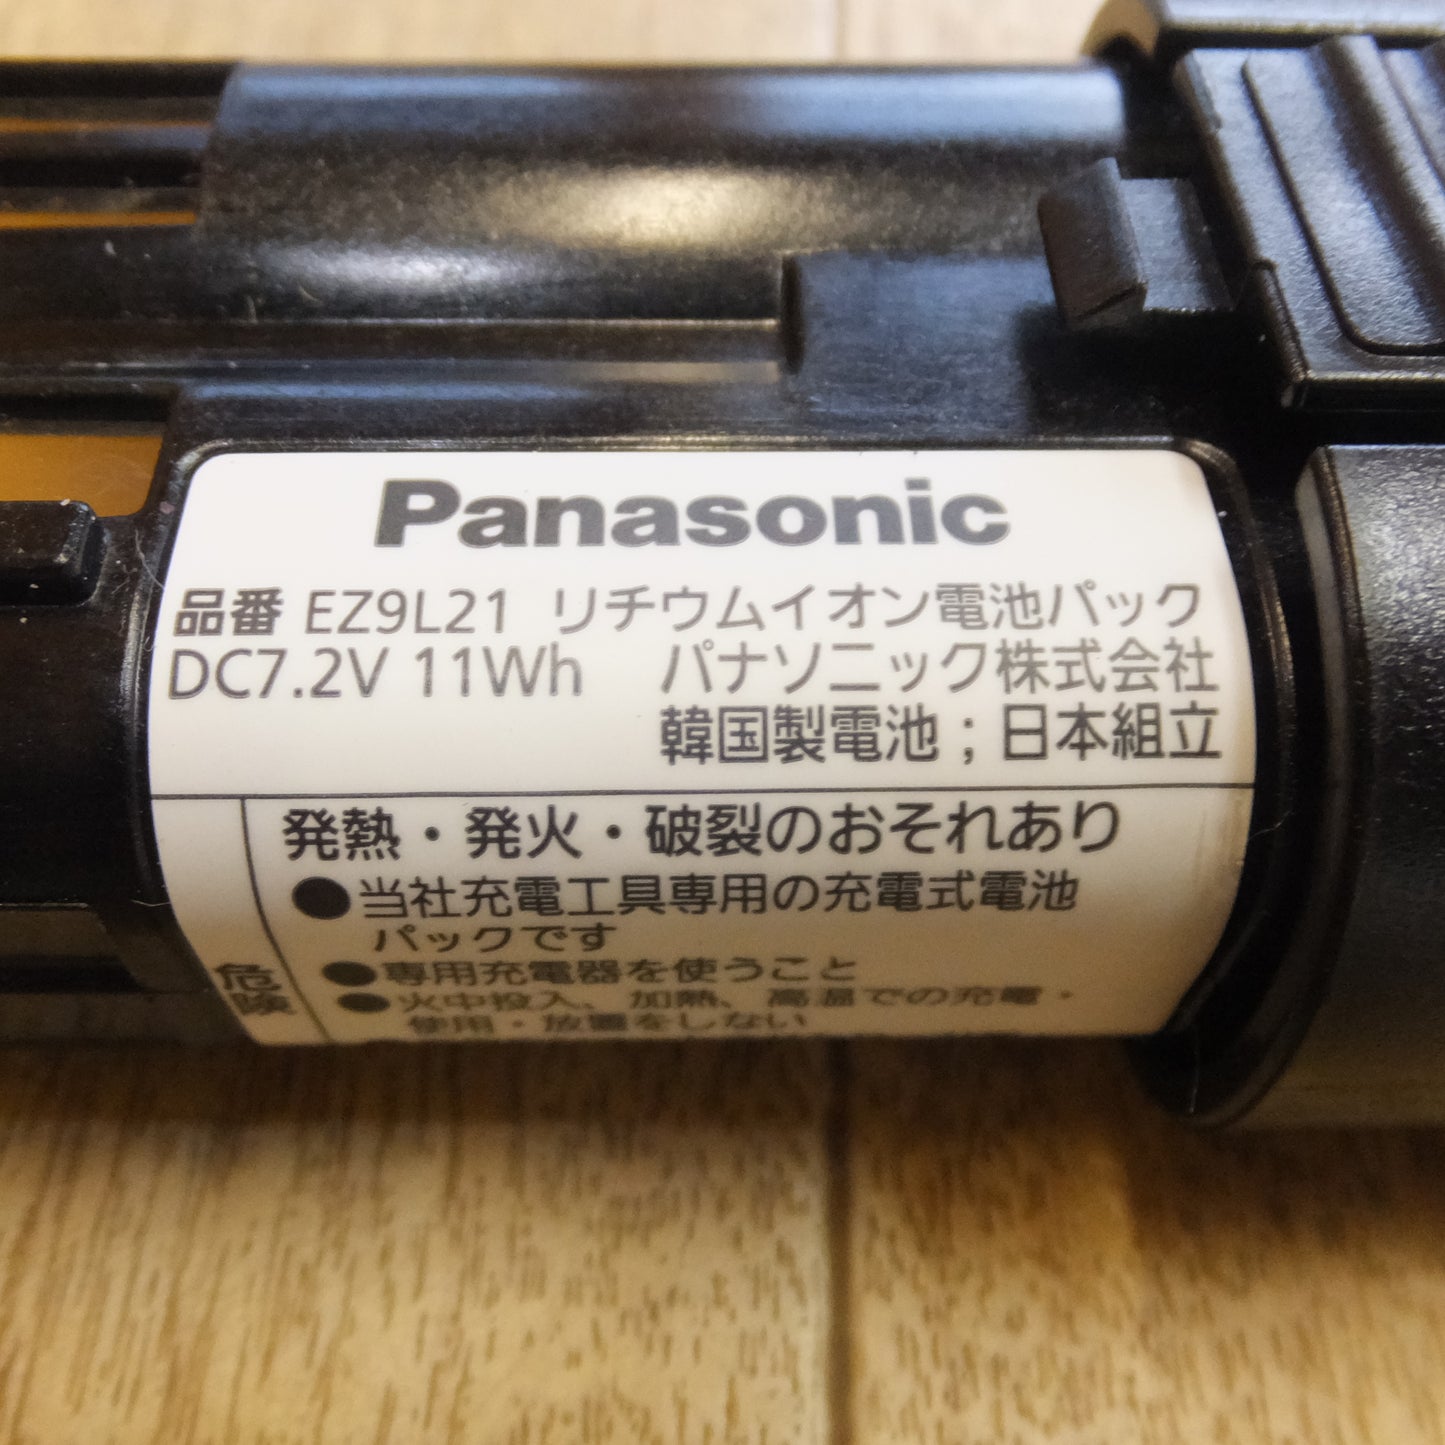 [送料無料]キレイ★パナソニック Panasonic 充電スティックドリルドライバー EZ7421LA2S-R DC7.2V★